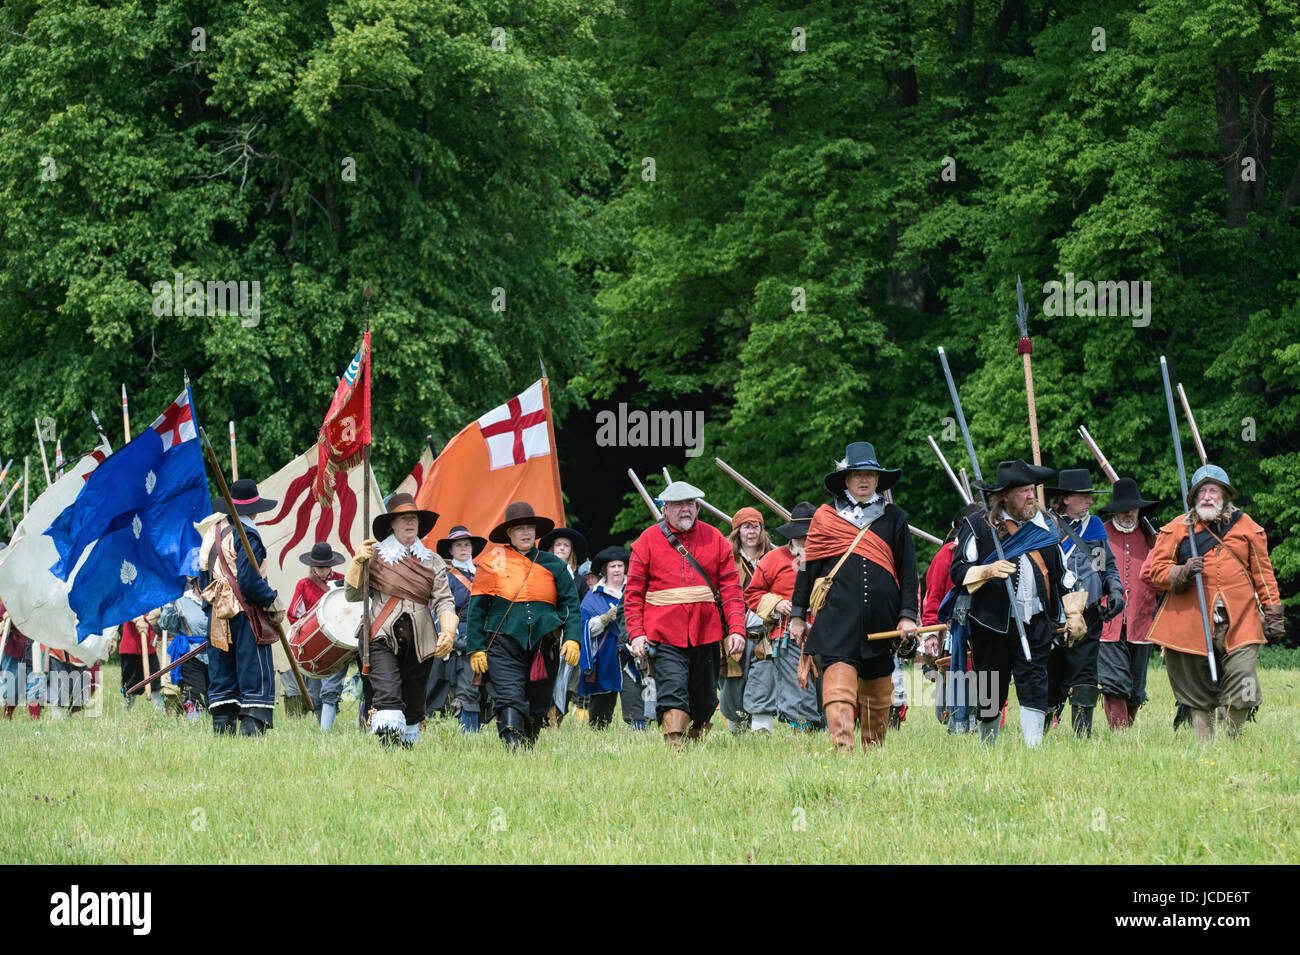 L'armée royaliste / Cavaliers marchant au combat à un Hogan-vexel English Civil war reenactment événement. Charlton park, Malmesbury, Wiltshire, UK . Banque D'Images